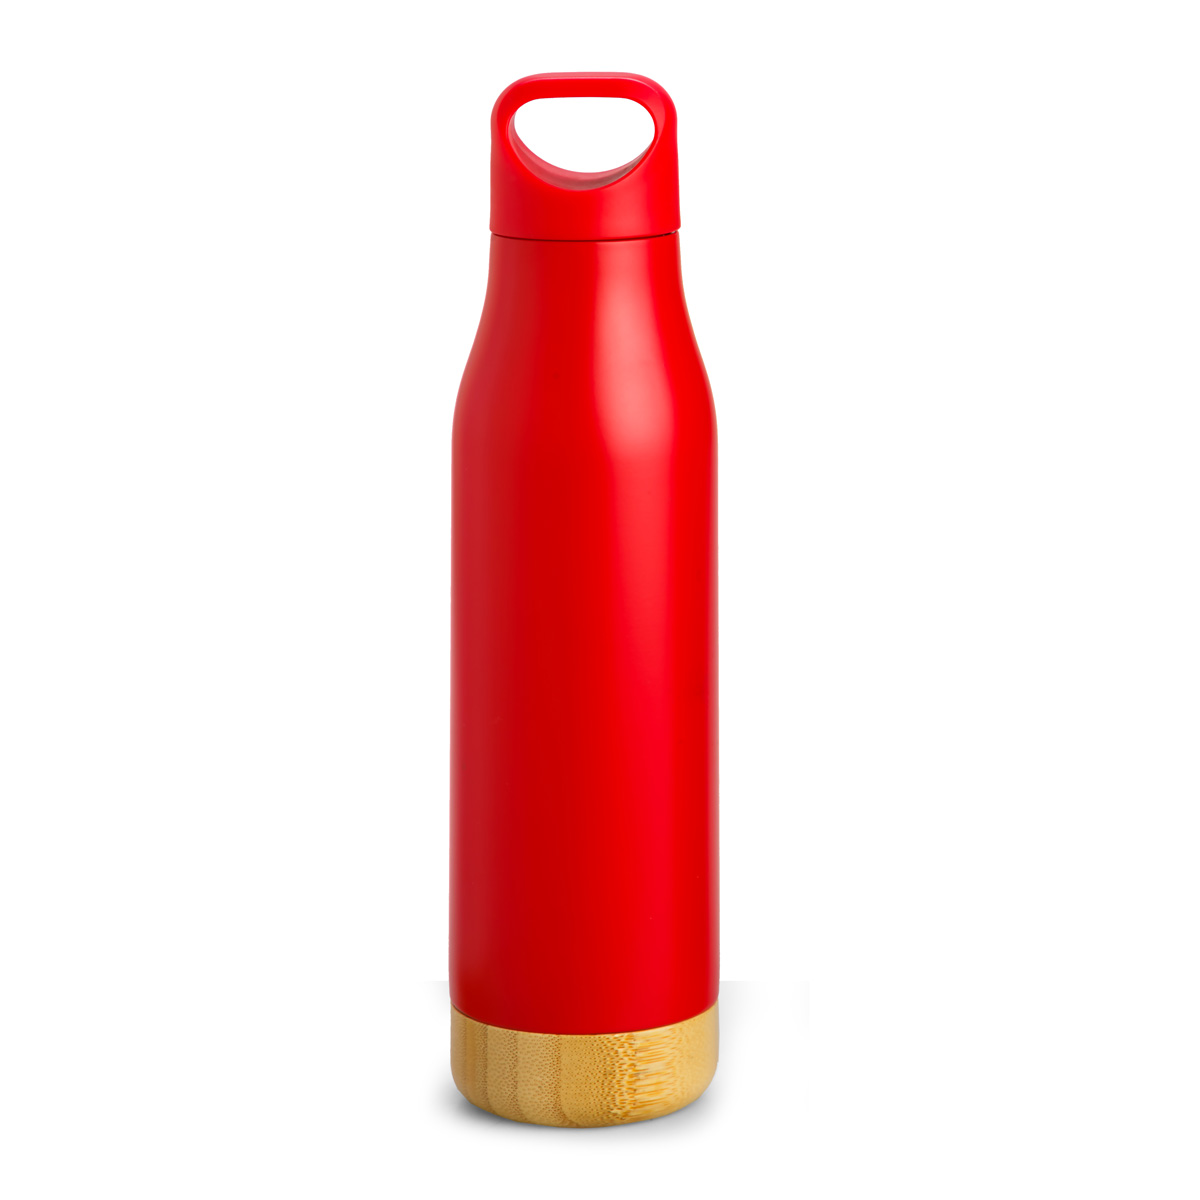 Scottsboro Bottle Product Image